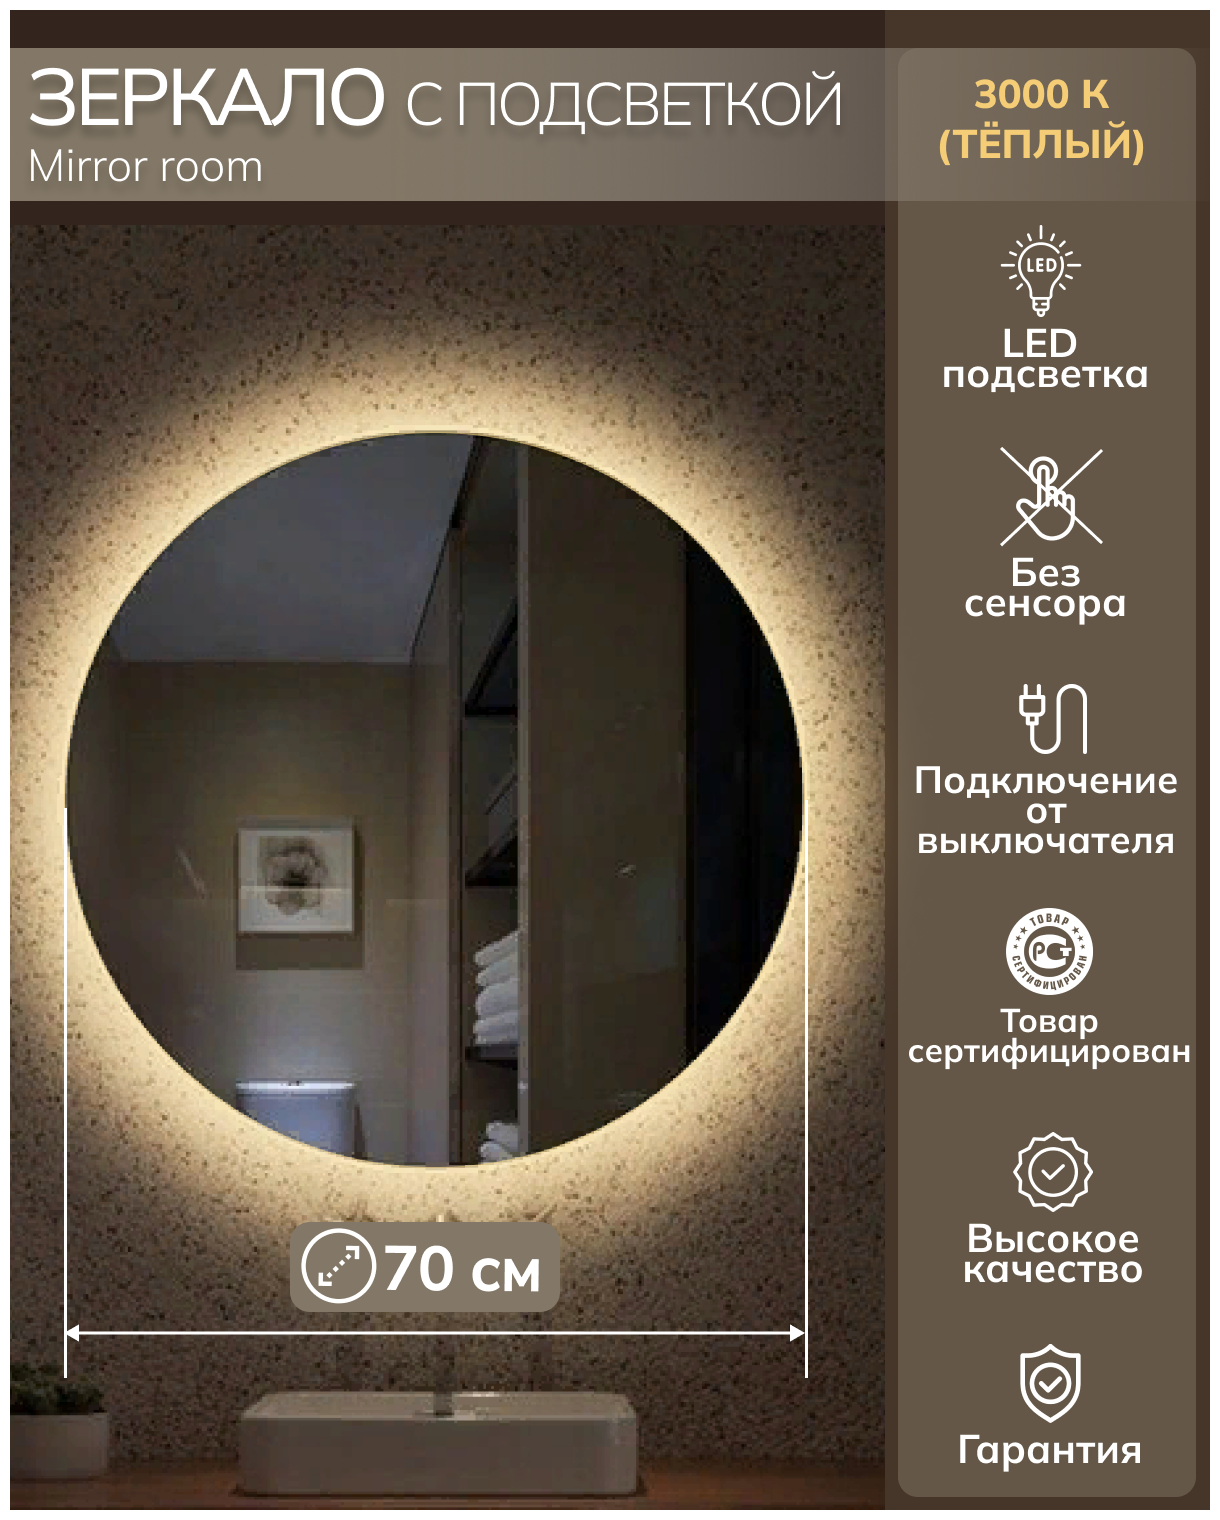 Зеркало круглое с подсветкой (3000К теплый свет) без сенсора диаметр 70 см.